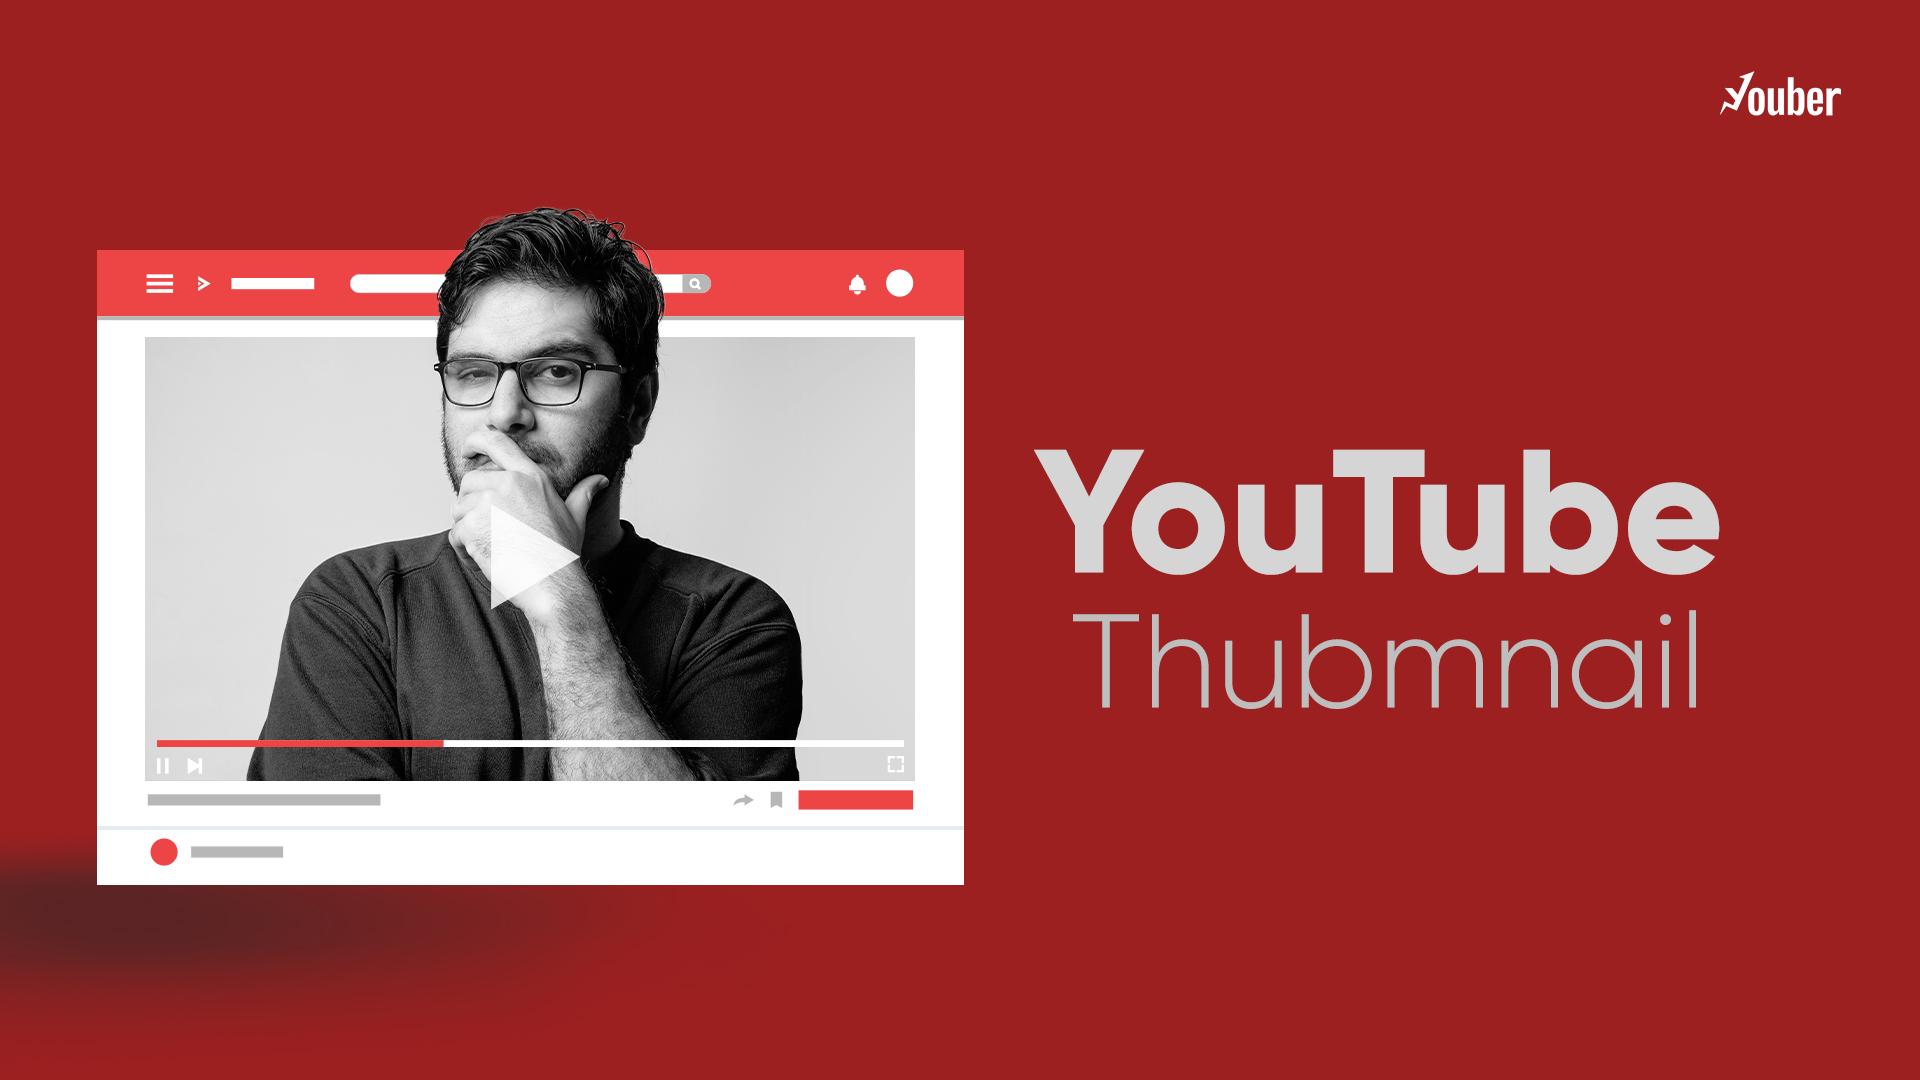 تامنیل یوتیوب؛ نکات مهم در طراحی تامنیل یوتیوب